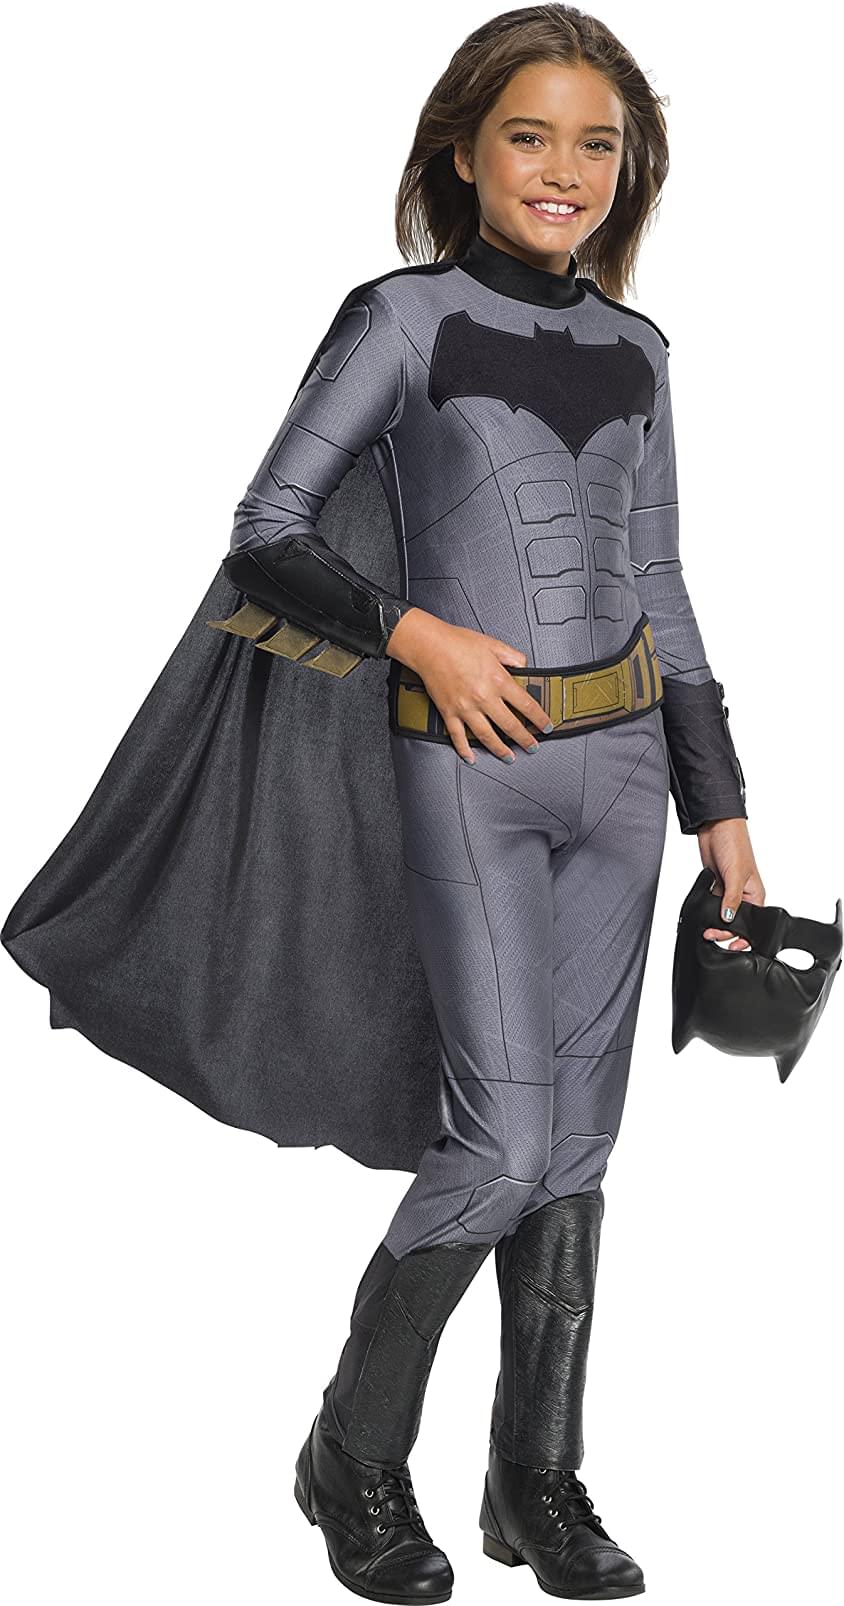 Photos - Fancy Dress Rubies Justice League Movie Batman Girl's Costume Jumpsuit RUB-641111S-C 